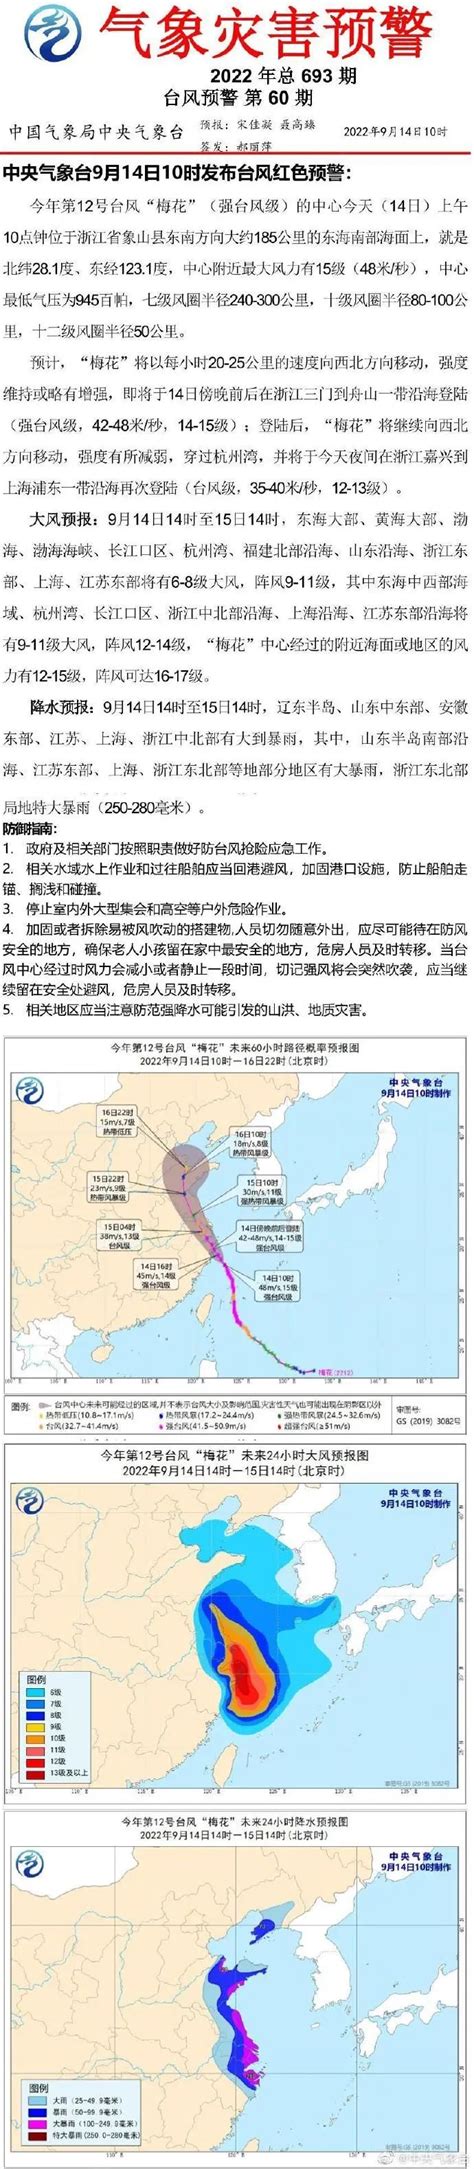 台风红色预警发布 “玛莉亚”将以强台风级直接登陆闽浙_荔枝网新闻